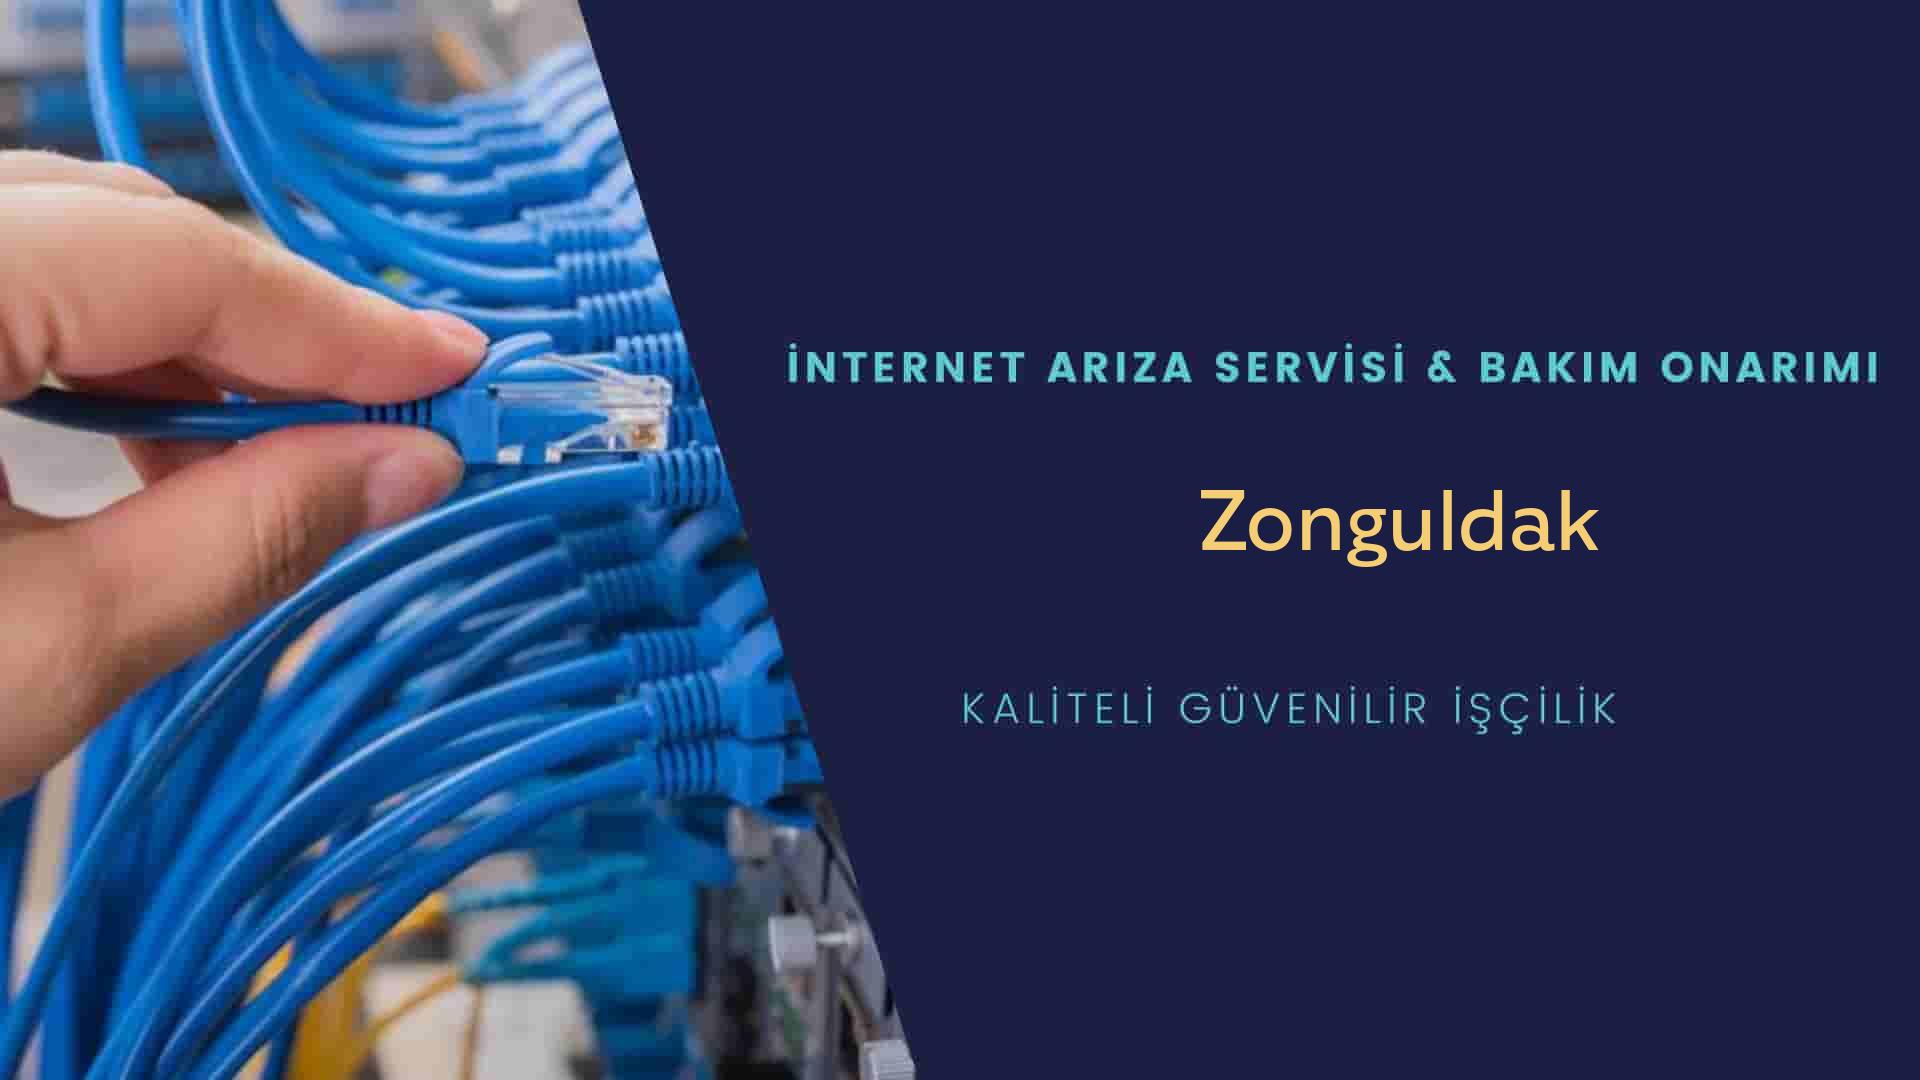 Zonguldak internet kablosu çekimi yapan yerler veya elektrikçiler mi? arıyorsunuz doğru yerdesiniz o zaman sizlere 7/24 yardımcı olacak profesyonel ustalarımız bir telefon kadar yakındır size.